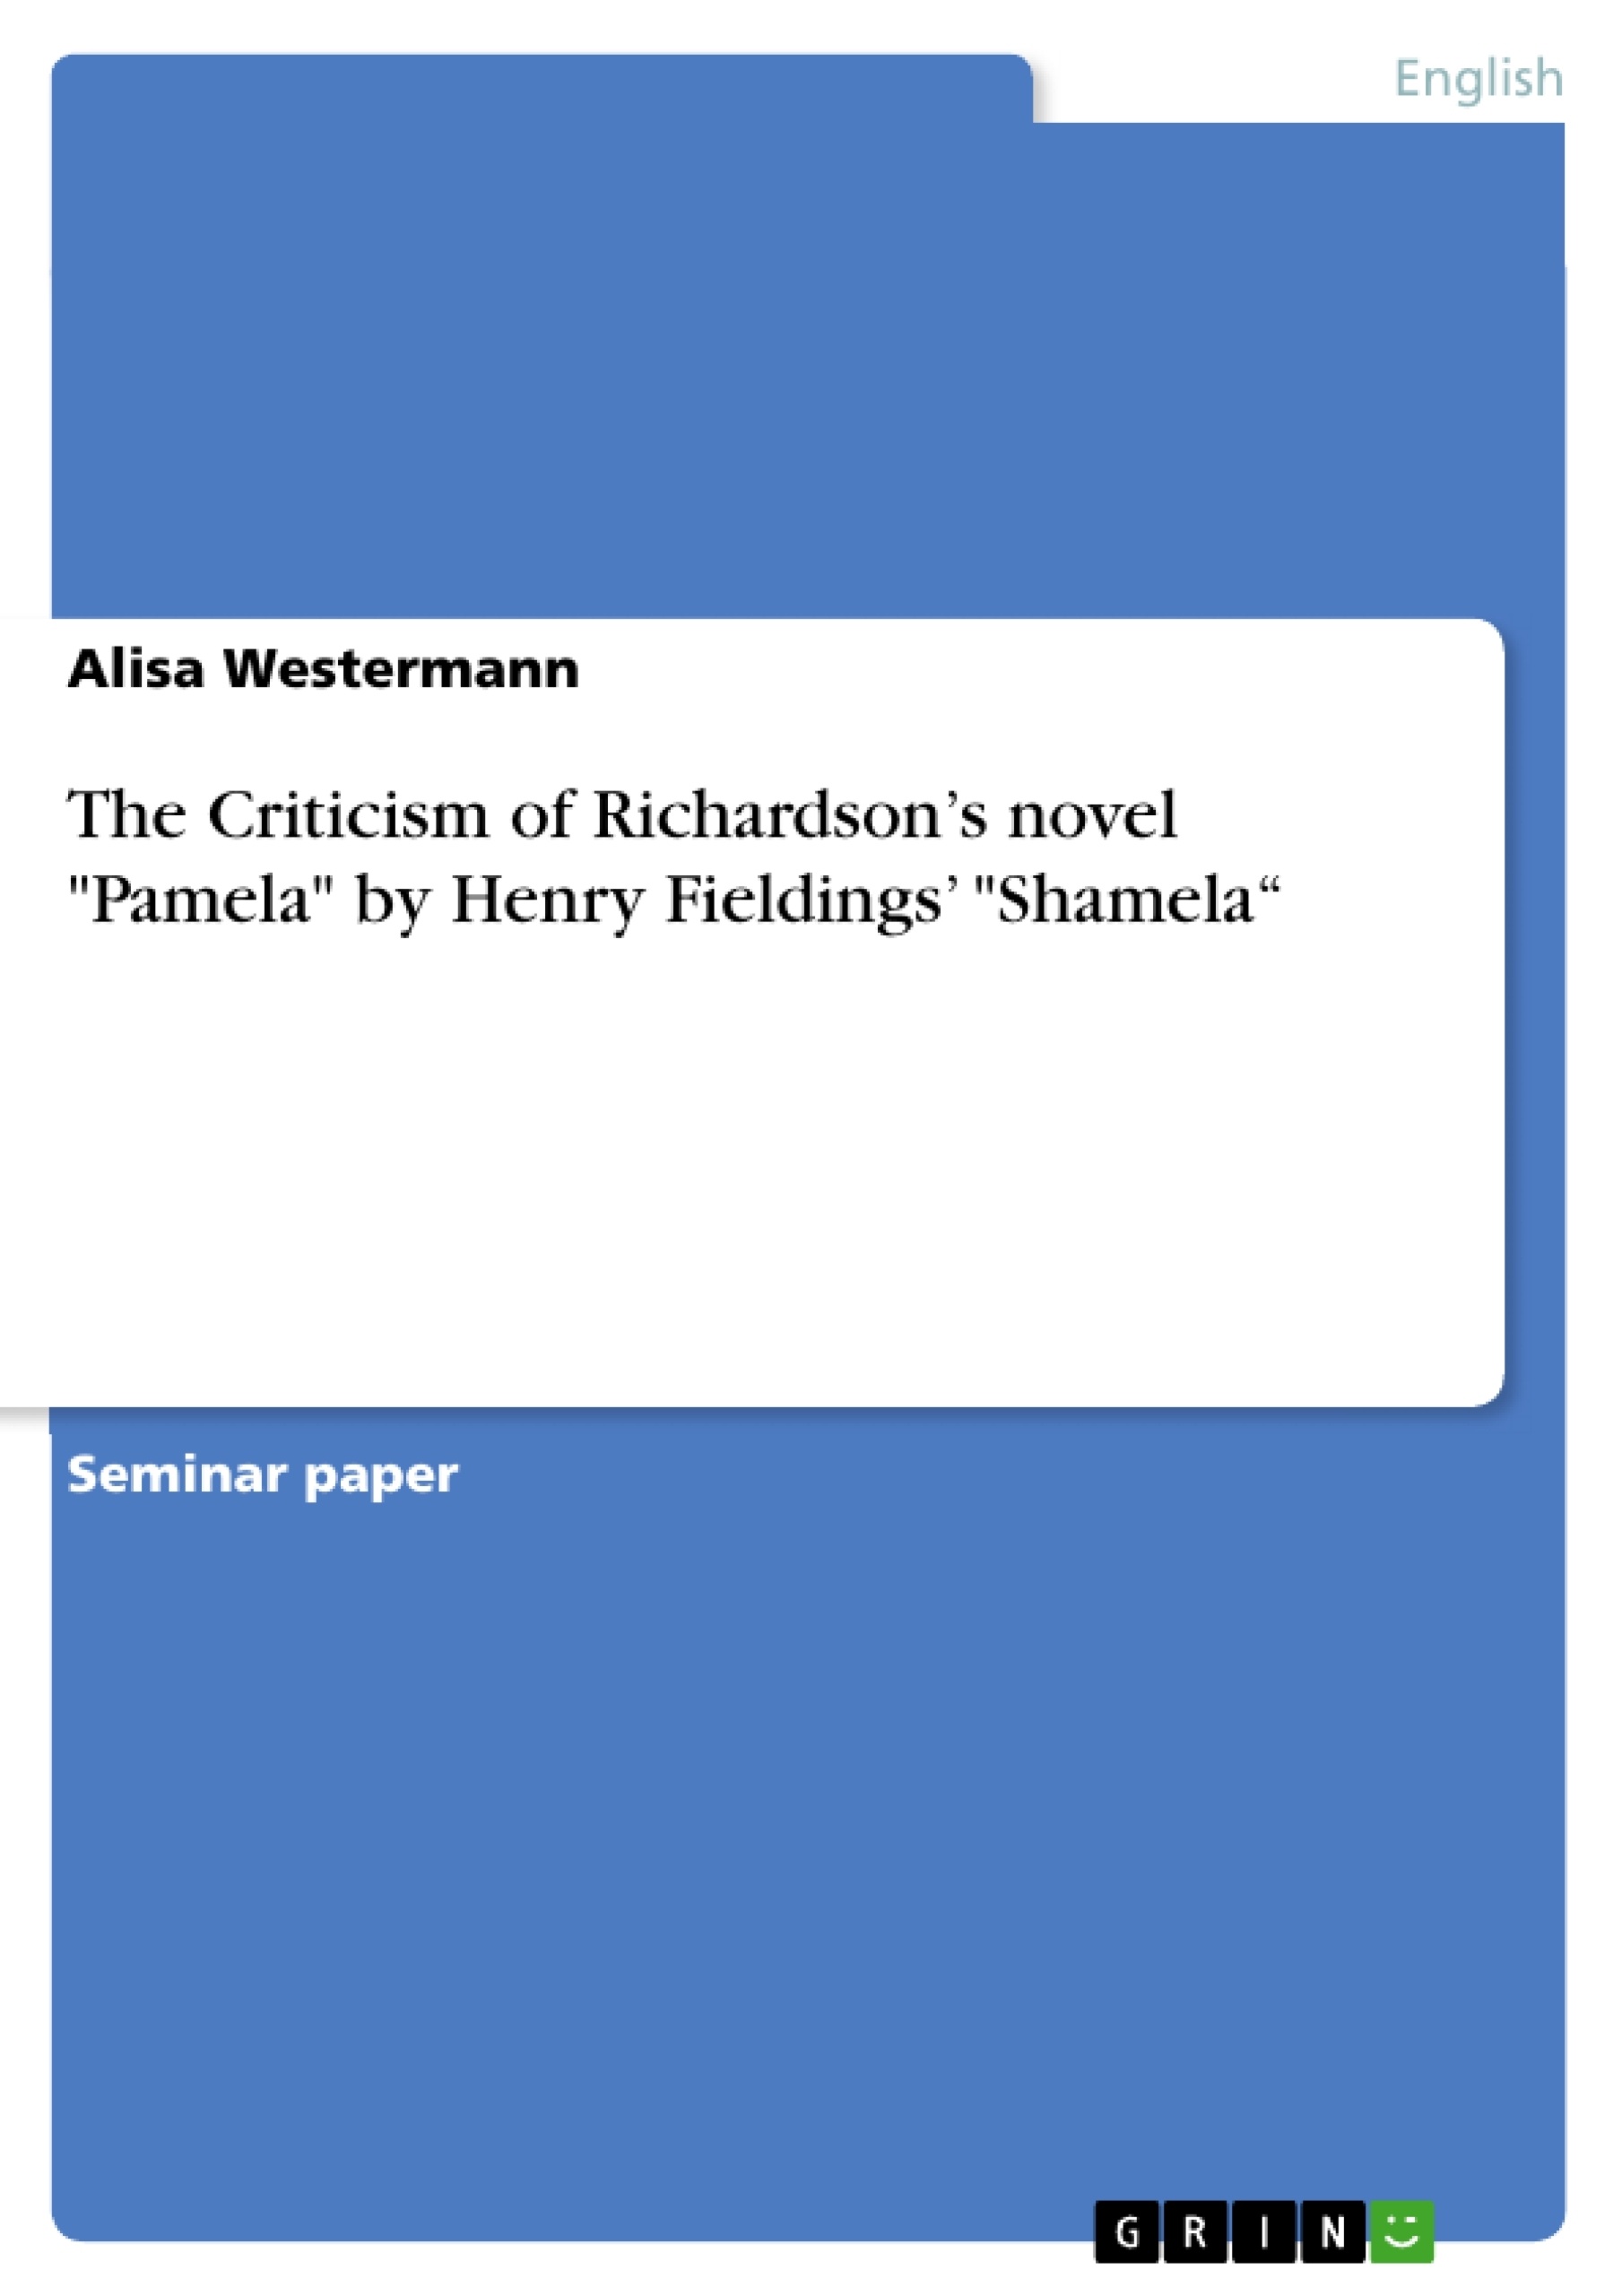 Título: The Criticism of Richardson’s novel "Pamela" by Henry Fieldings’ "Shamela“